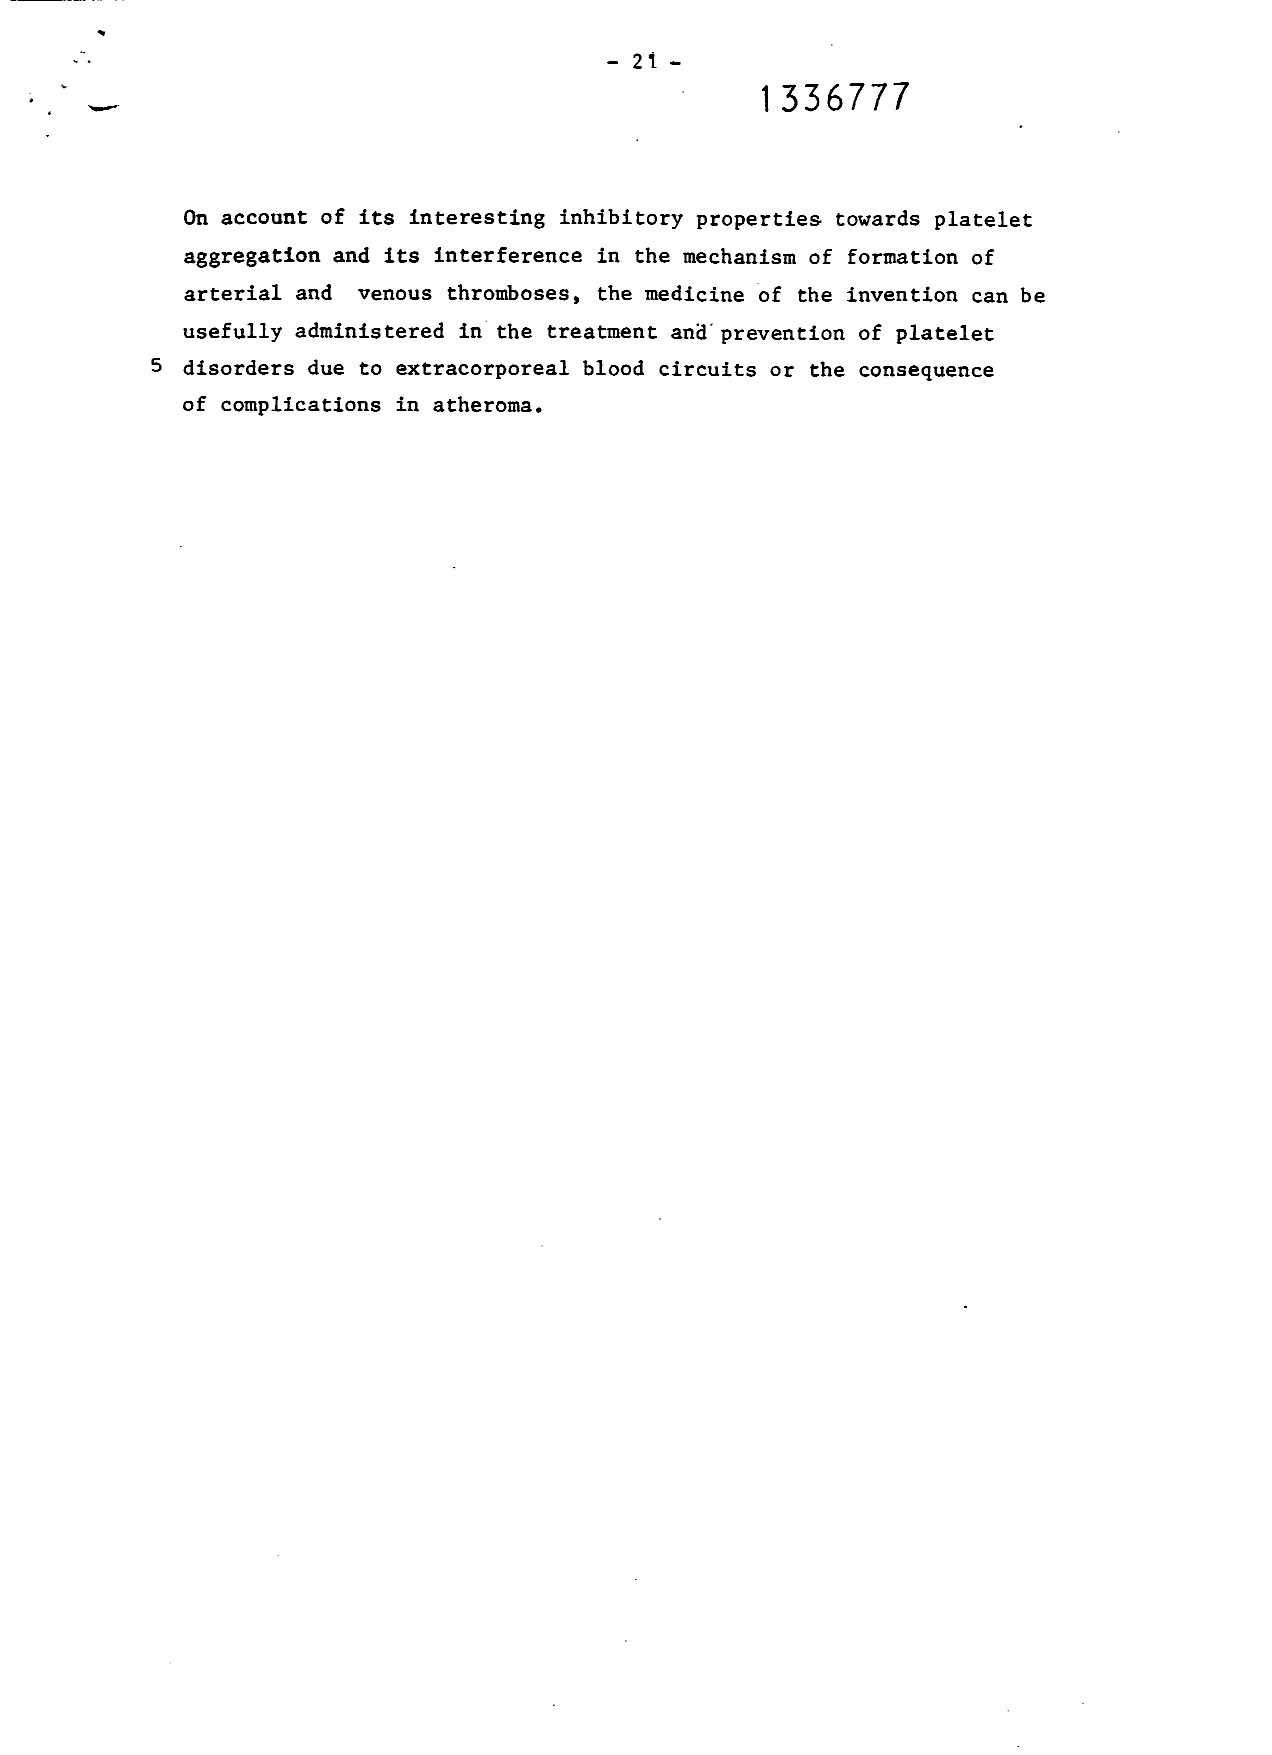 Canadian Patent Document 1336777. Description 19941222. Image 21 of 21